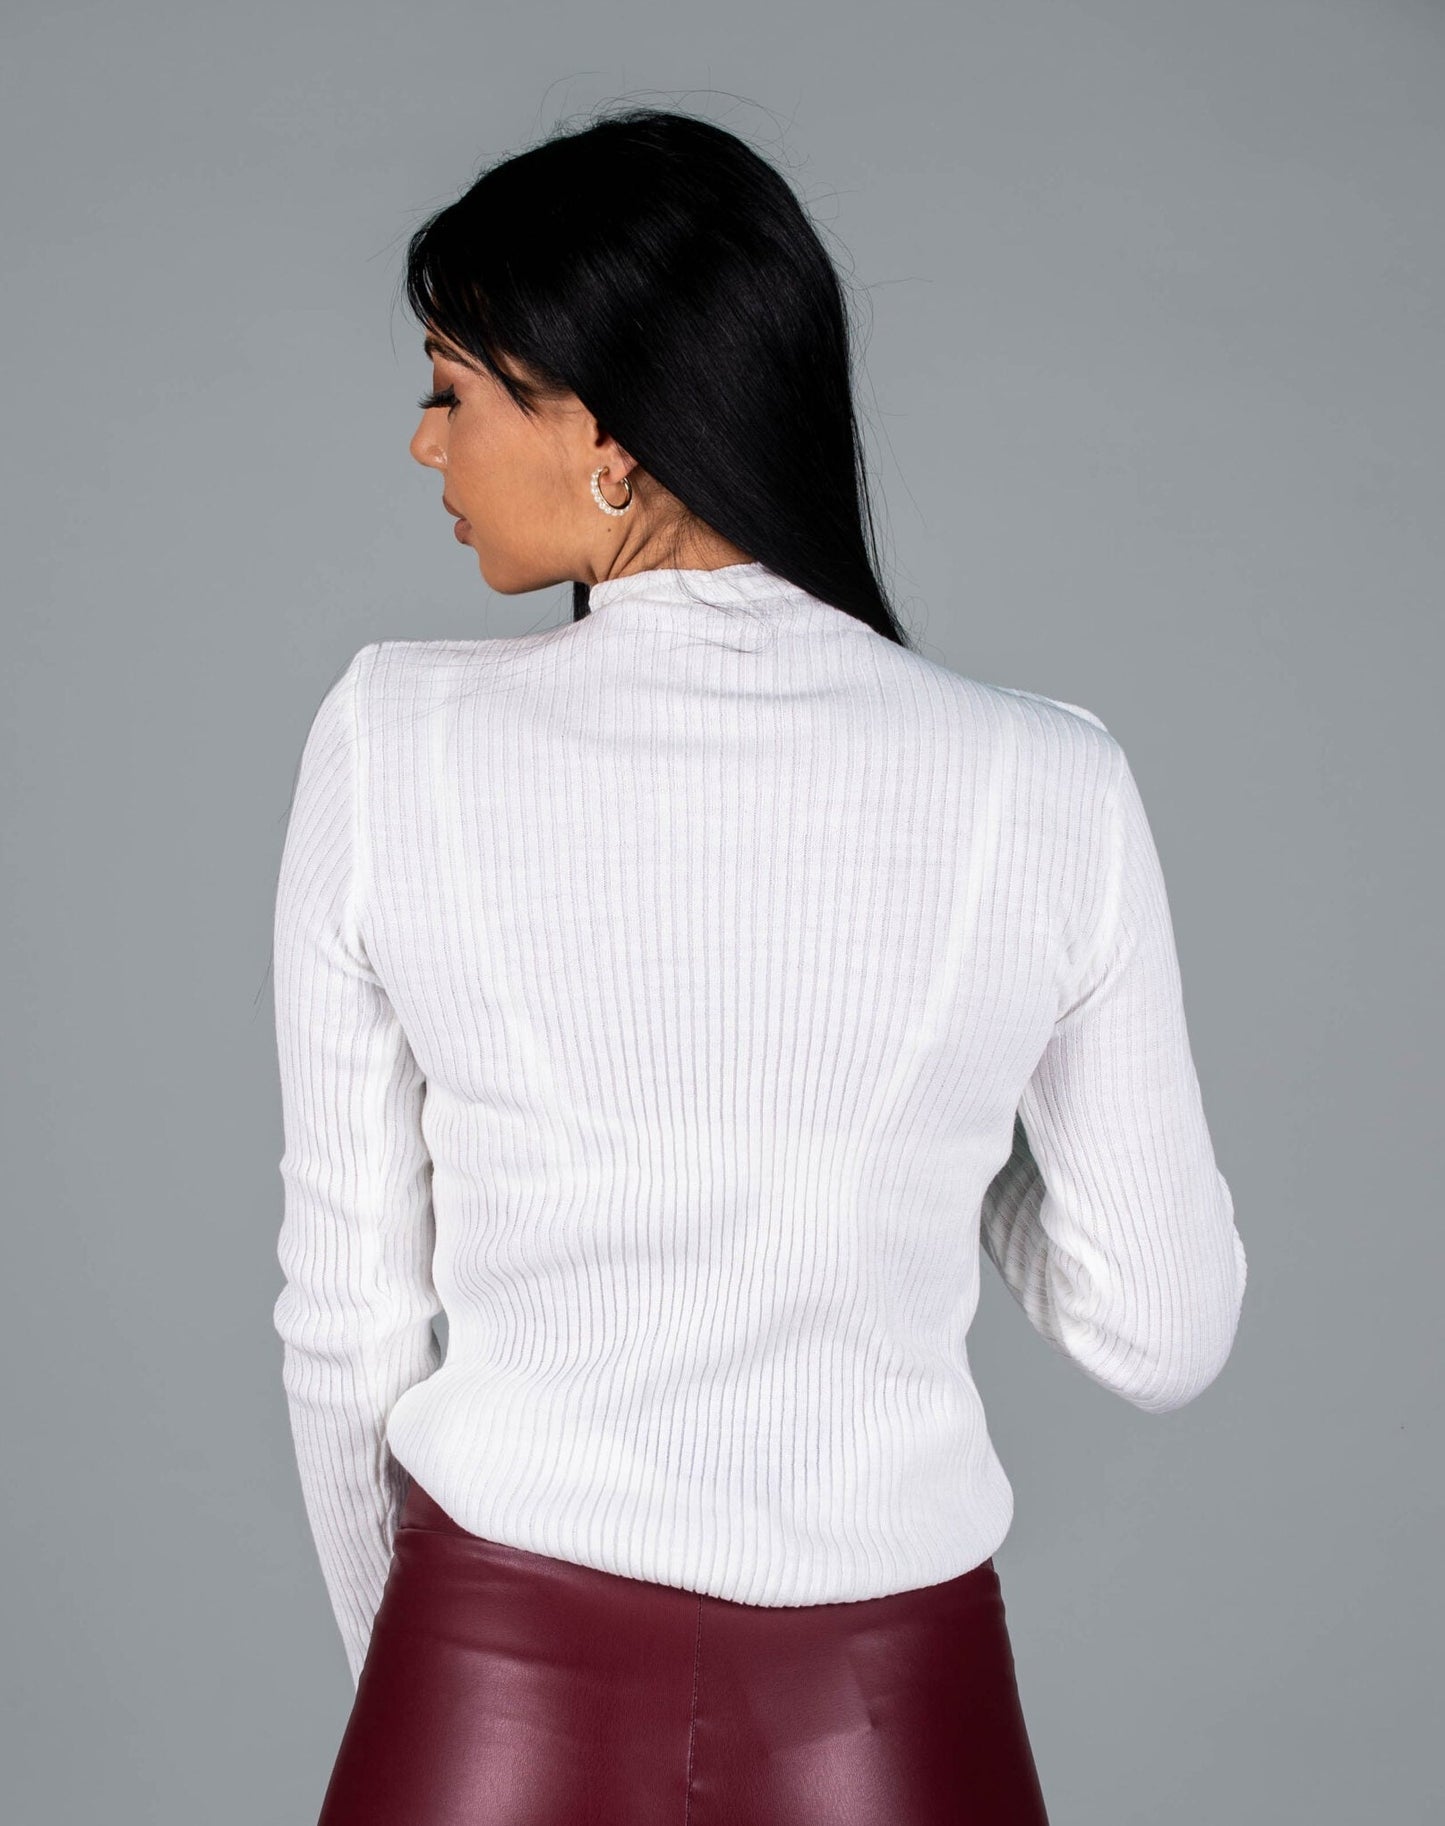 Дамска блуза FINERSA  https://bvseductive.com/products/дамска-блуза-finersa  70 % вълна 30 % акрил стилна дамска блуза в бял цвят&nbsp; моделът е с ефектни цветчета&nbsp; и поло яка висококачествена изработка и модерно излъчване кройка по тялото, подходяща за всяка фигура стилно предложение за сезон Есен/Зима